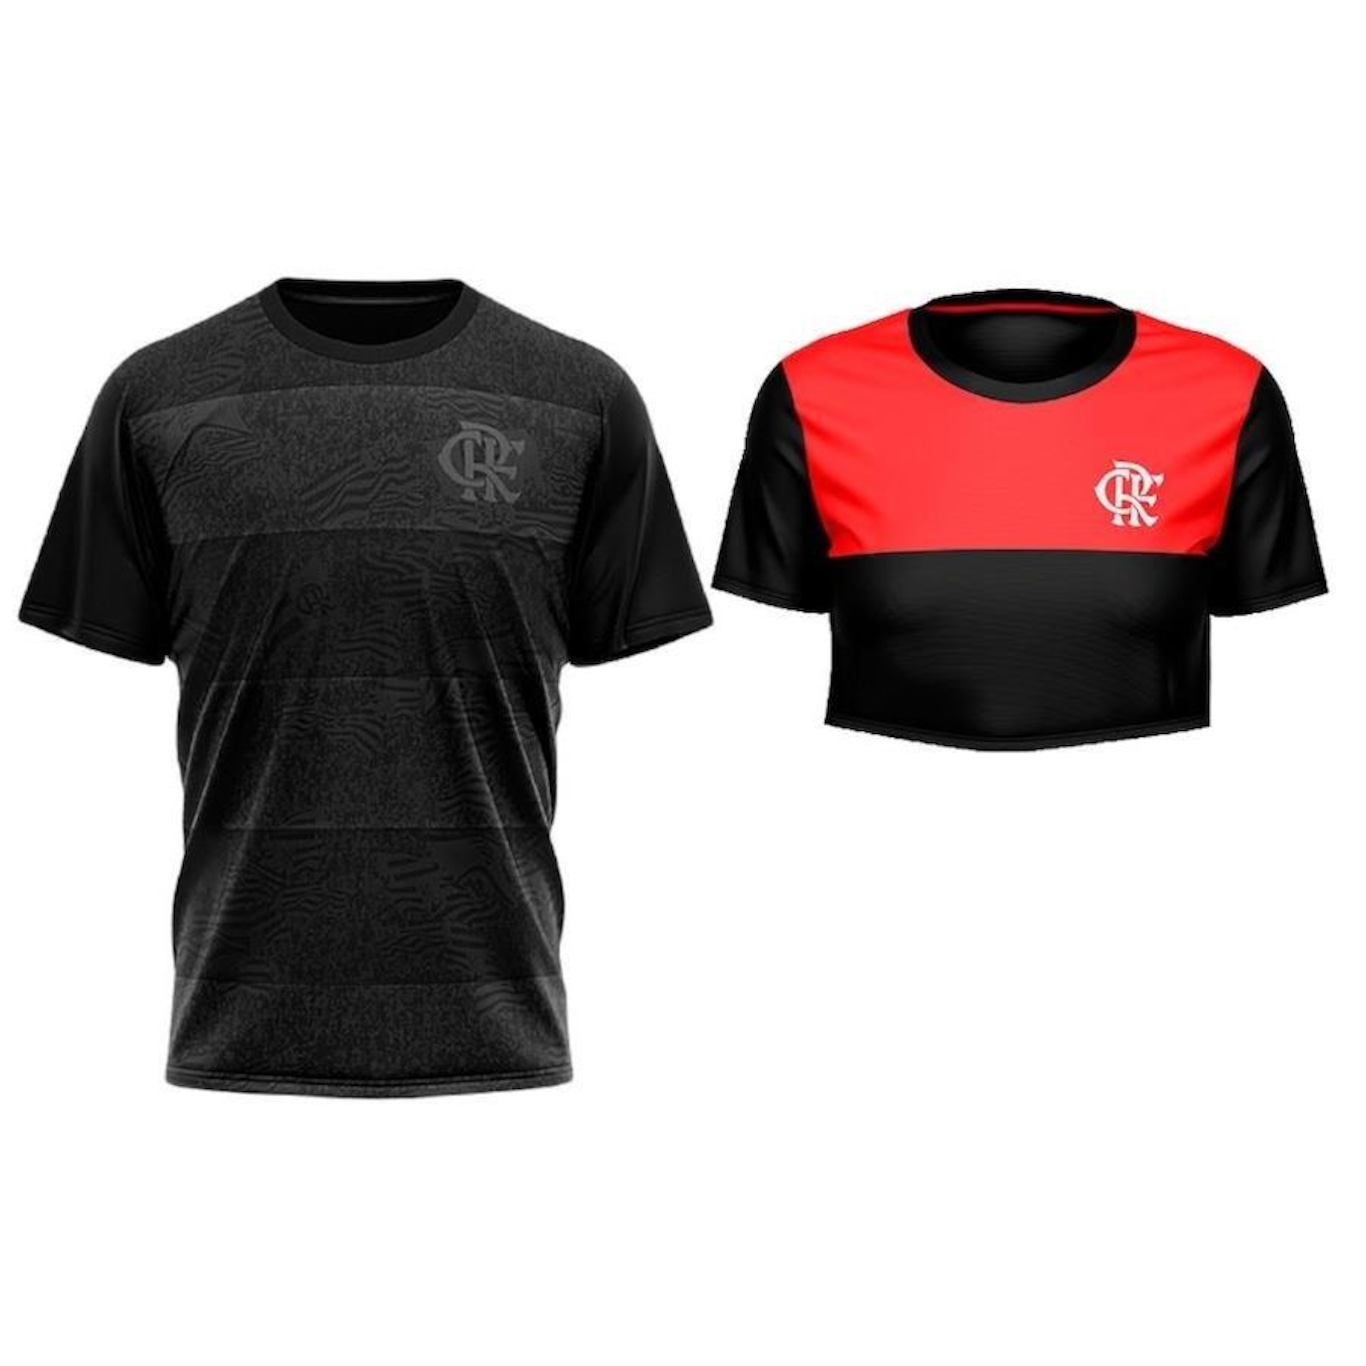 Kit 3 Camisas Do Flamengo Masculina Oficial Licenciado Tamanho:P